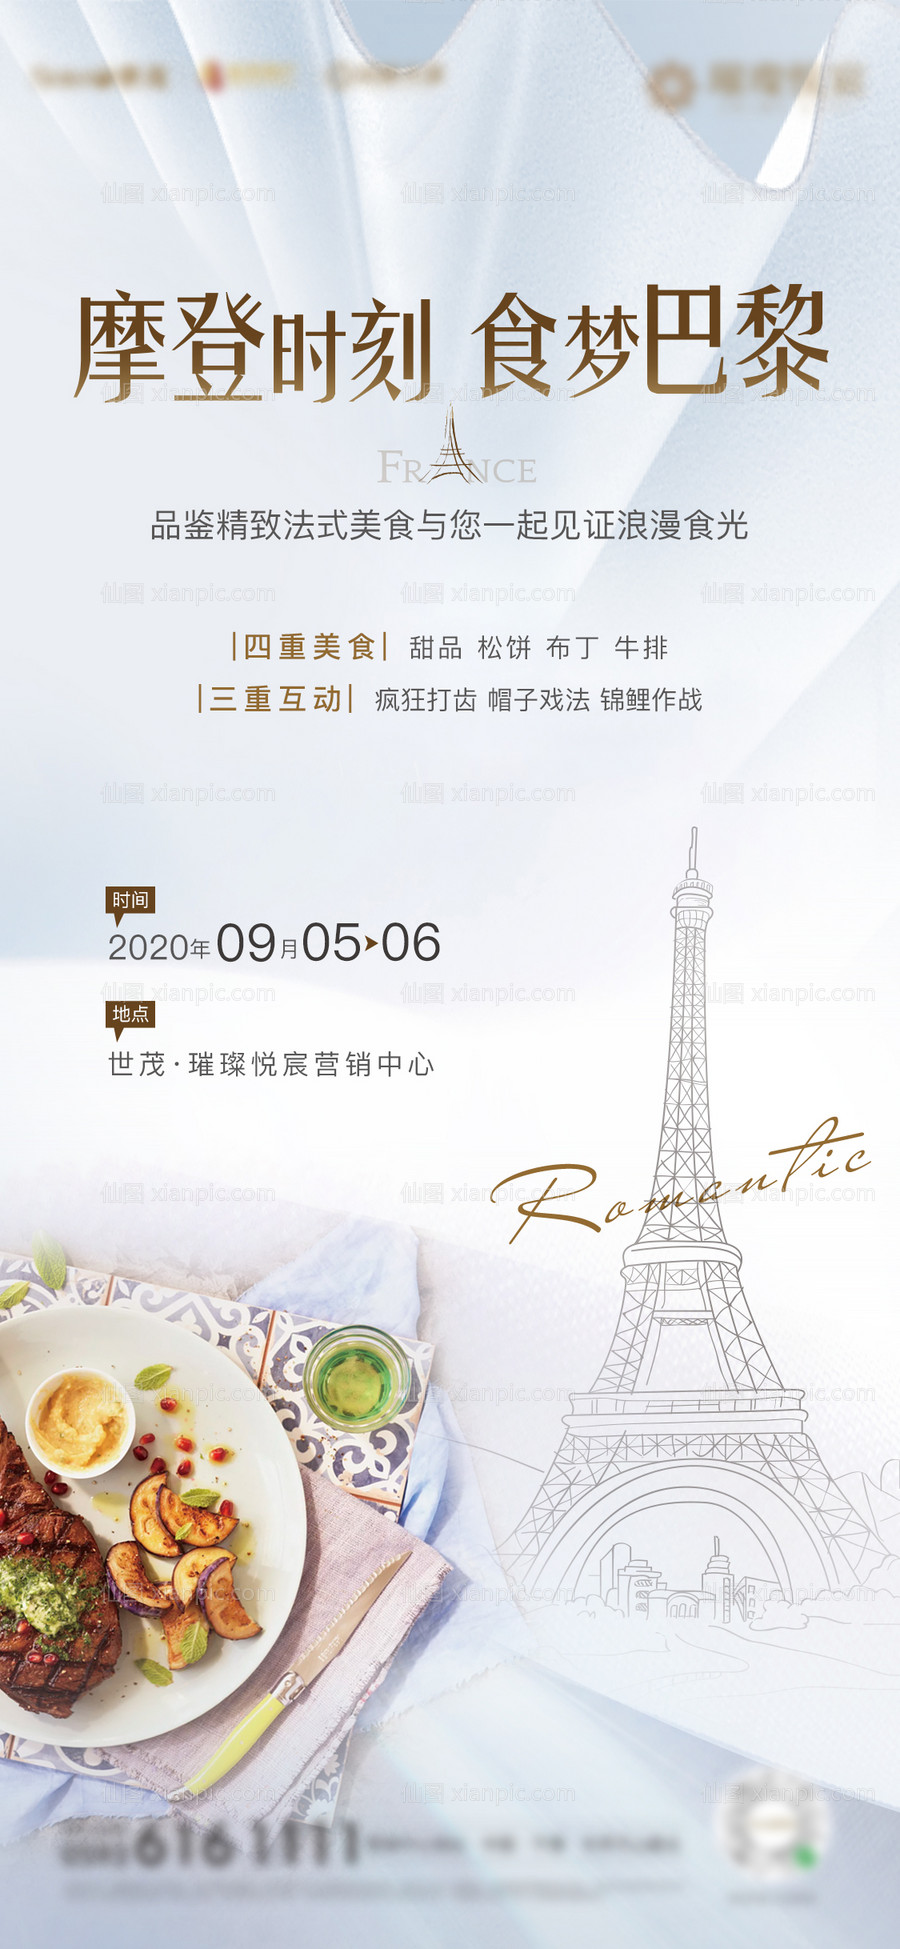 素材乐-房地产法国美食节活动海报